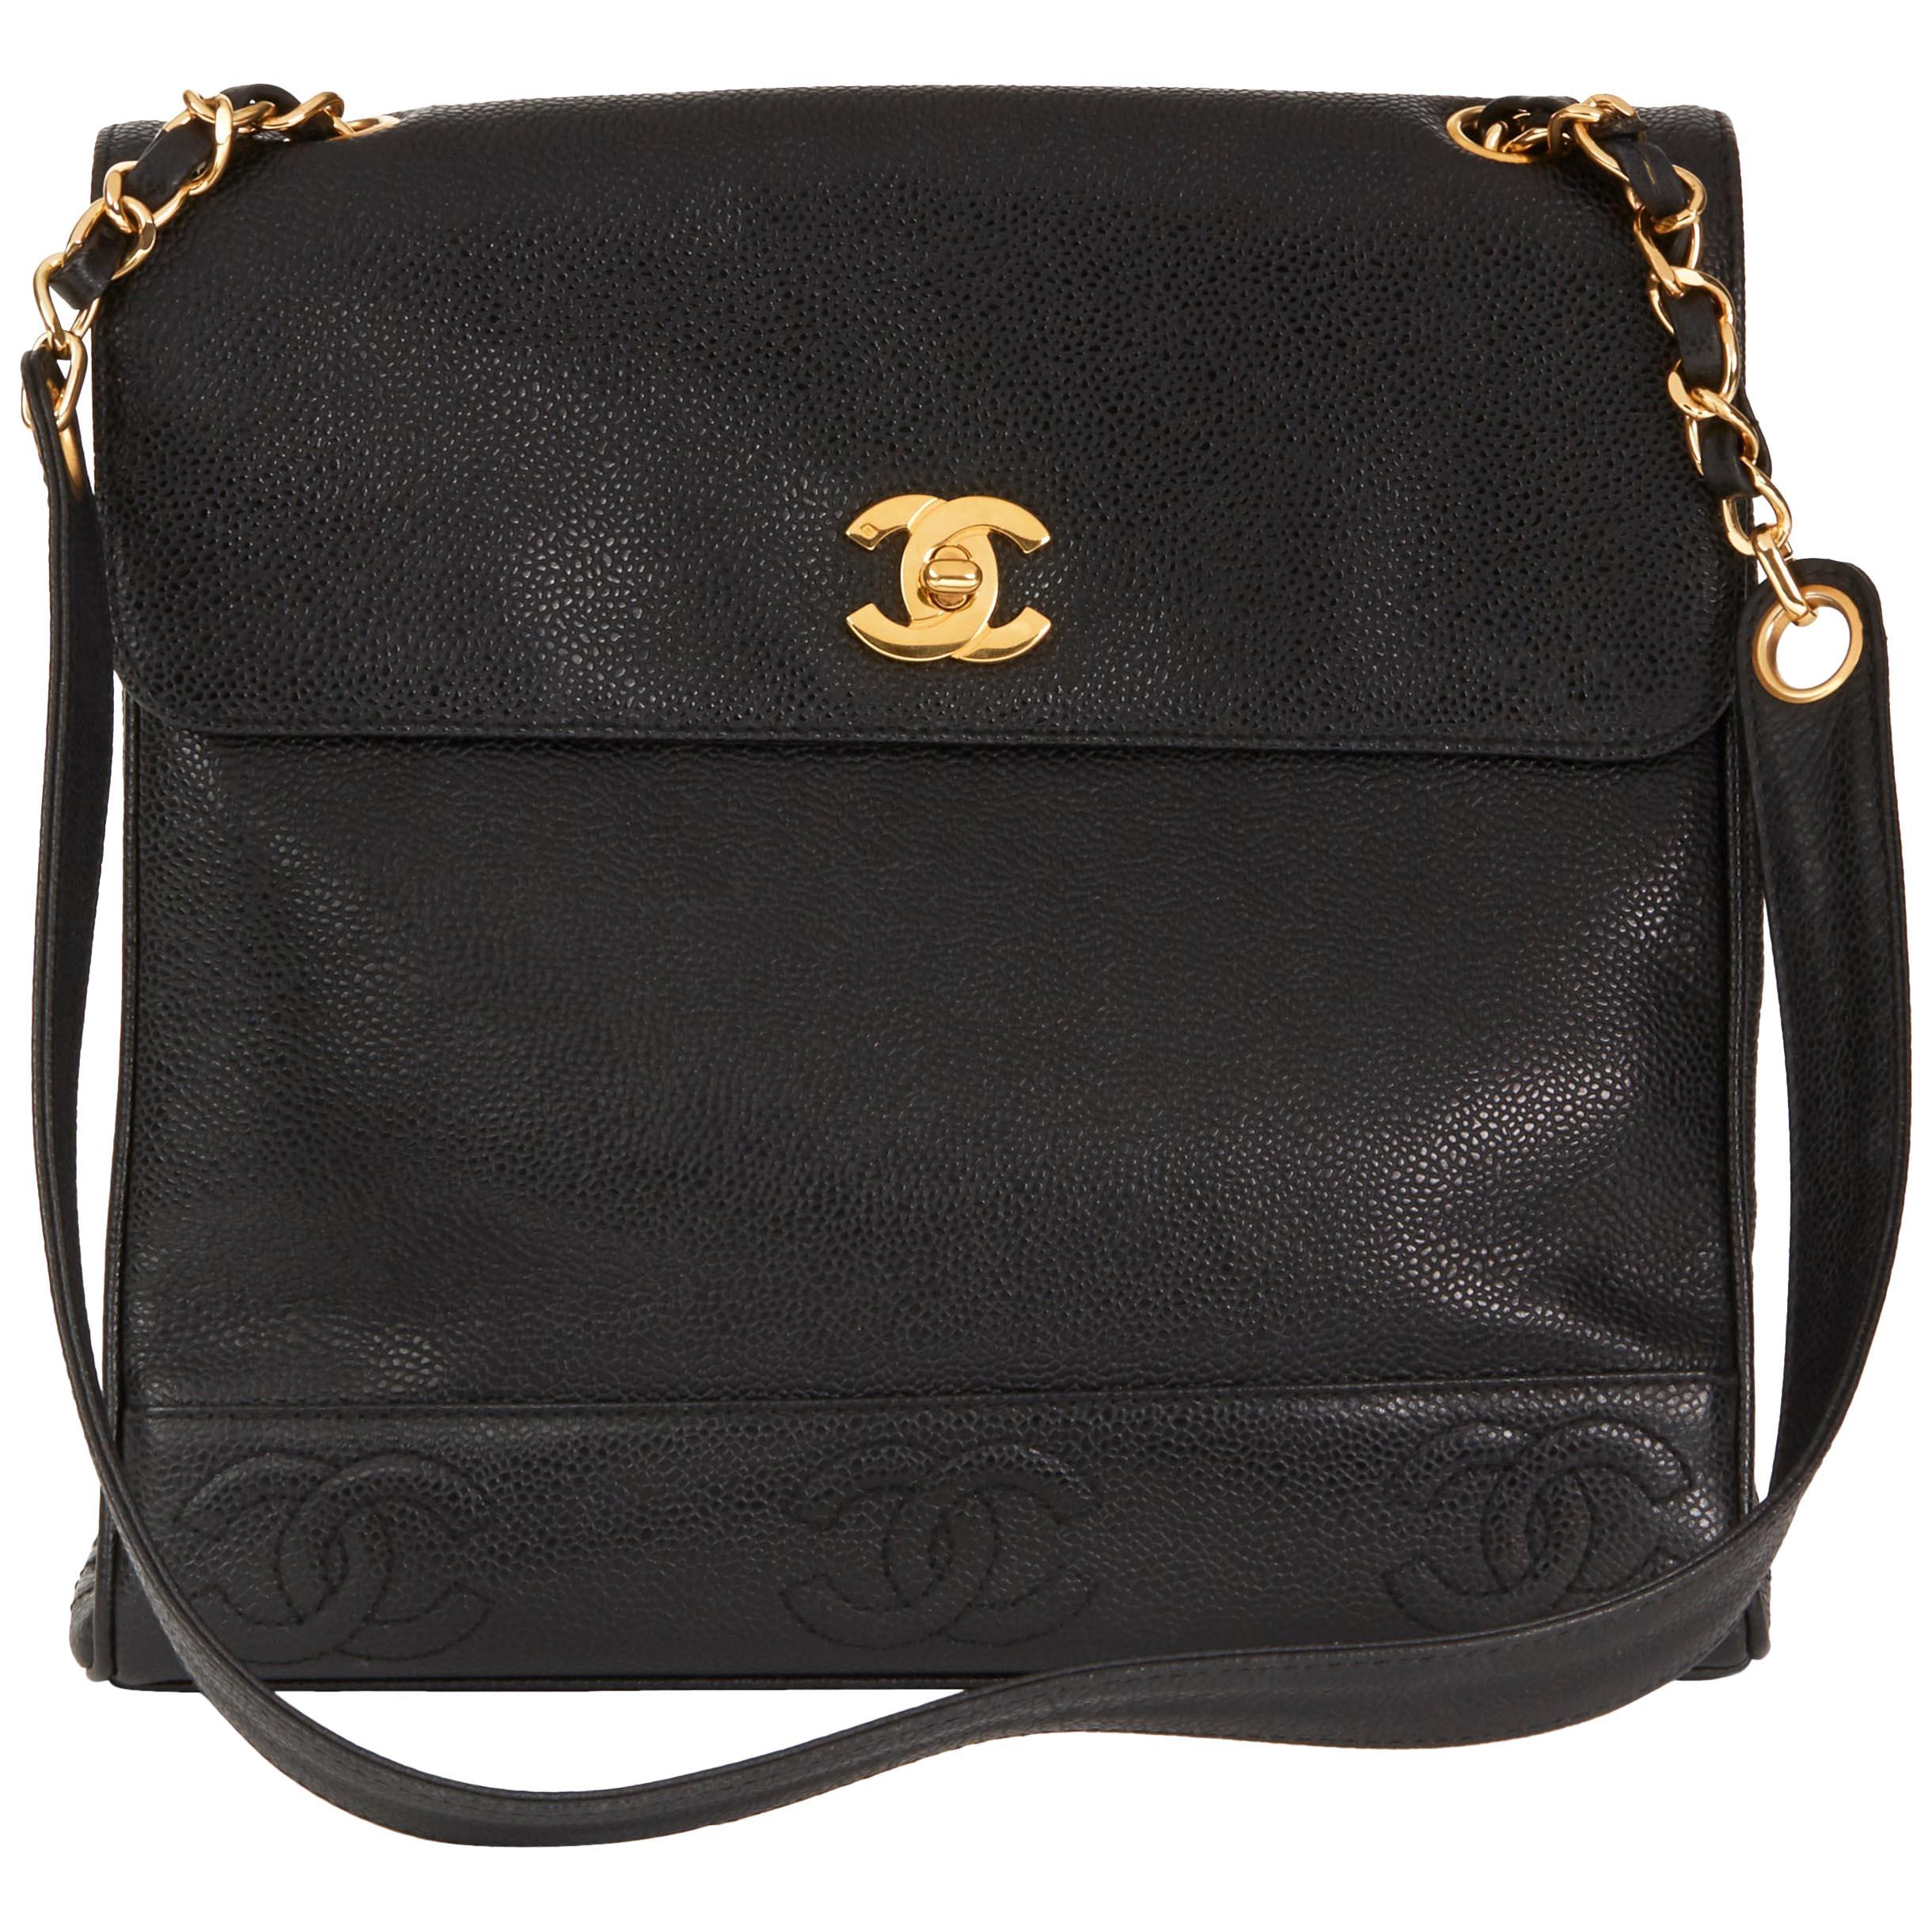 1996 Chanel Black Caviar Leather Vintage Shoulder Bag 